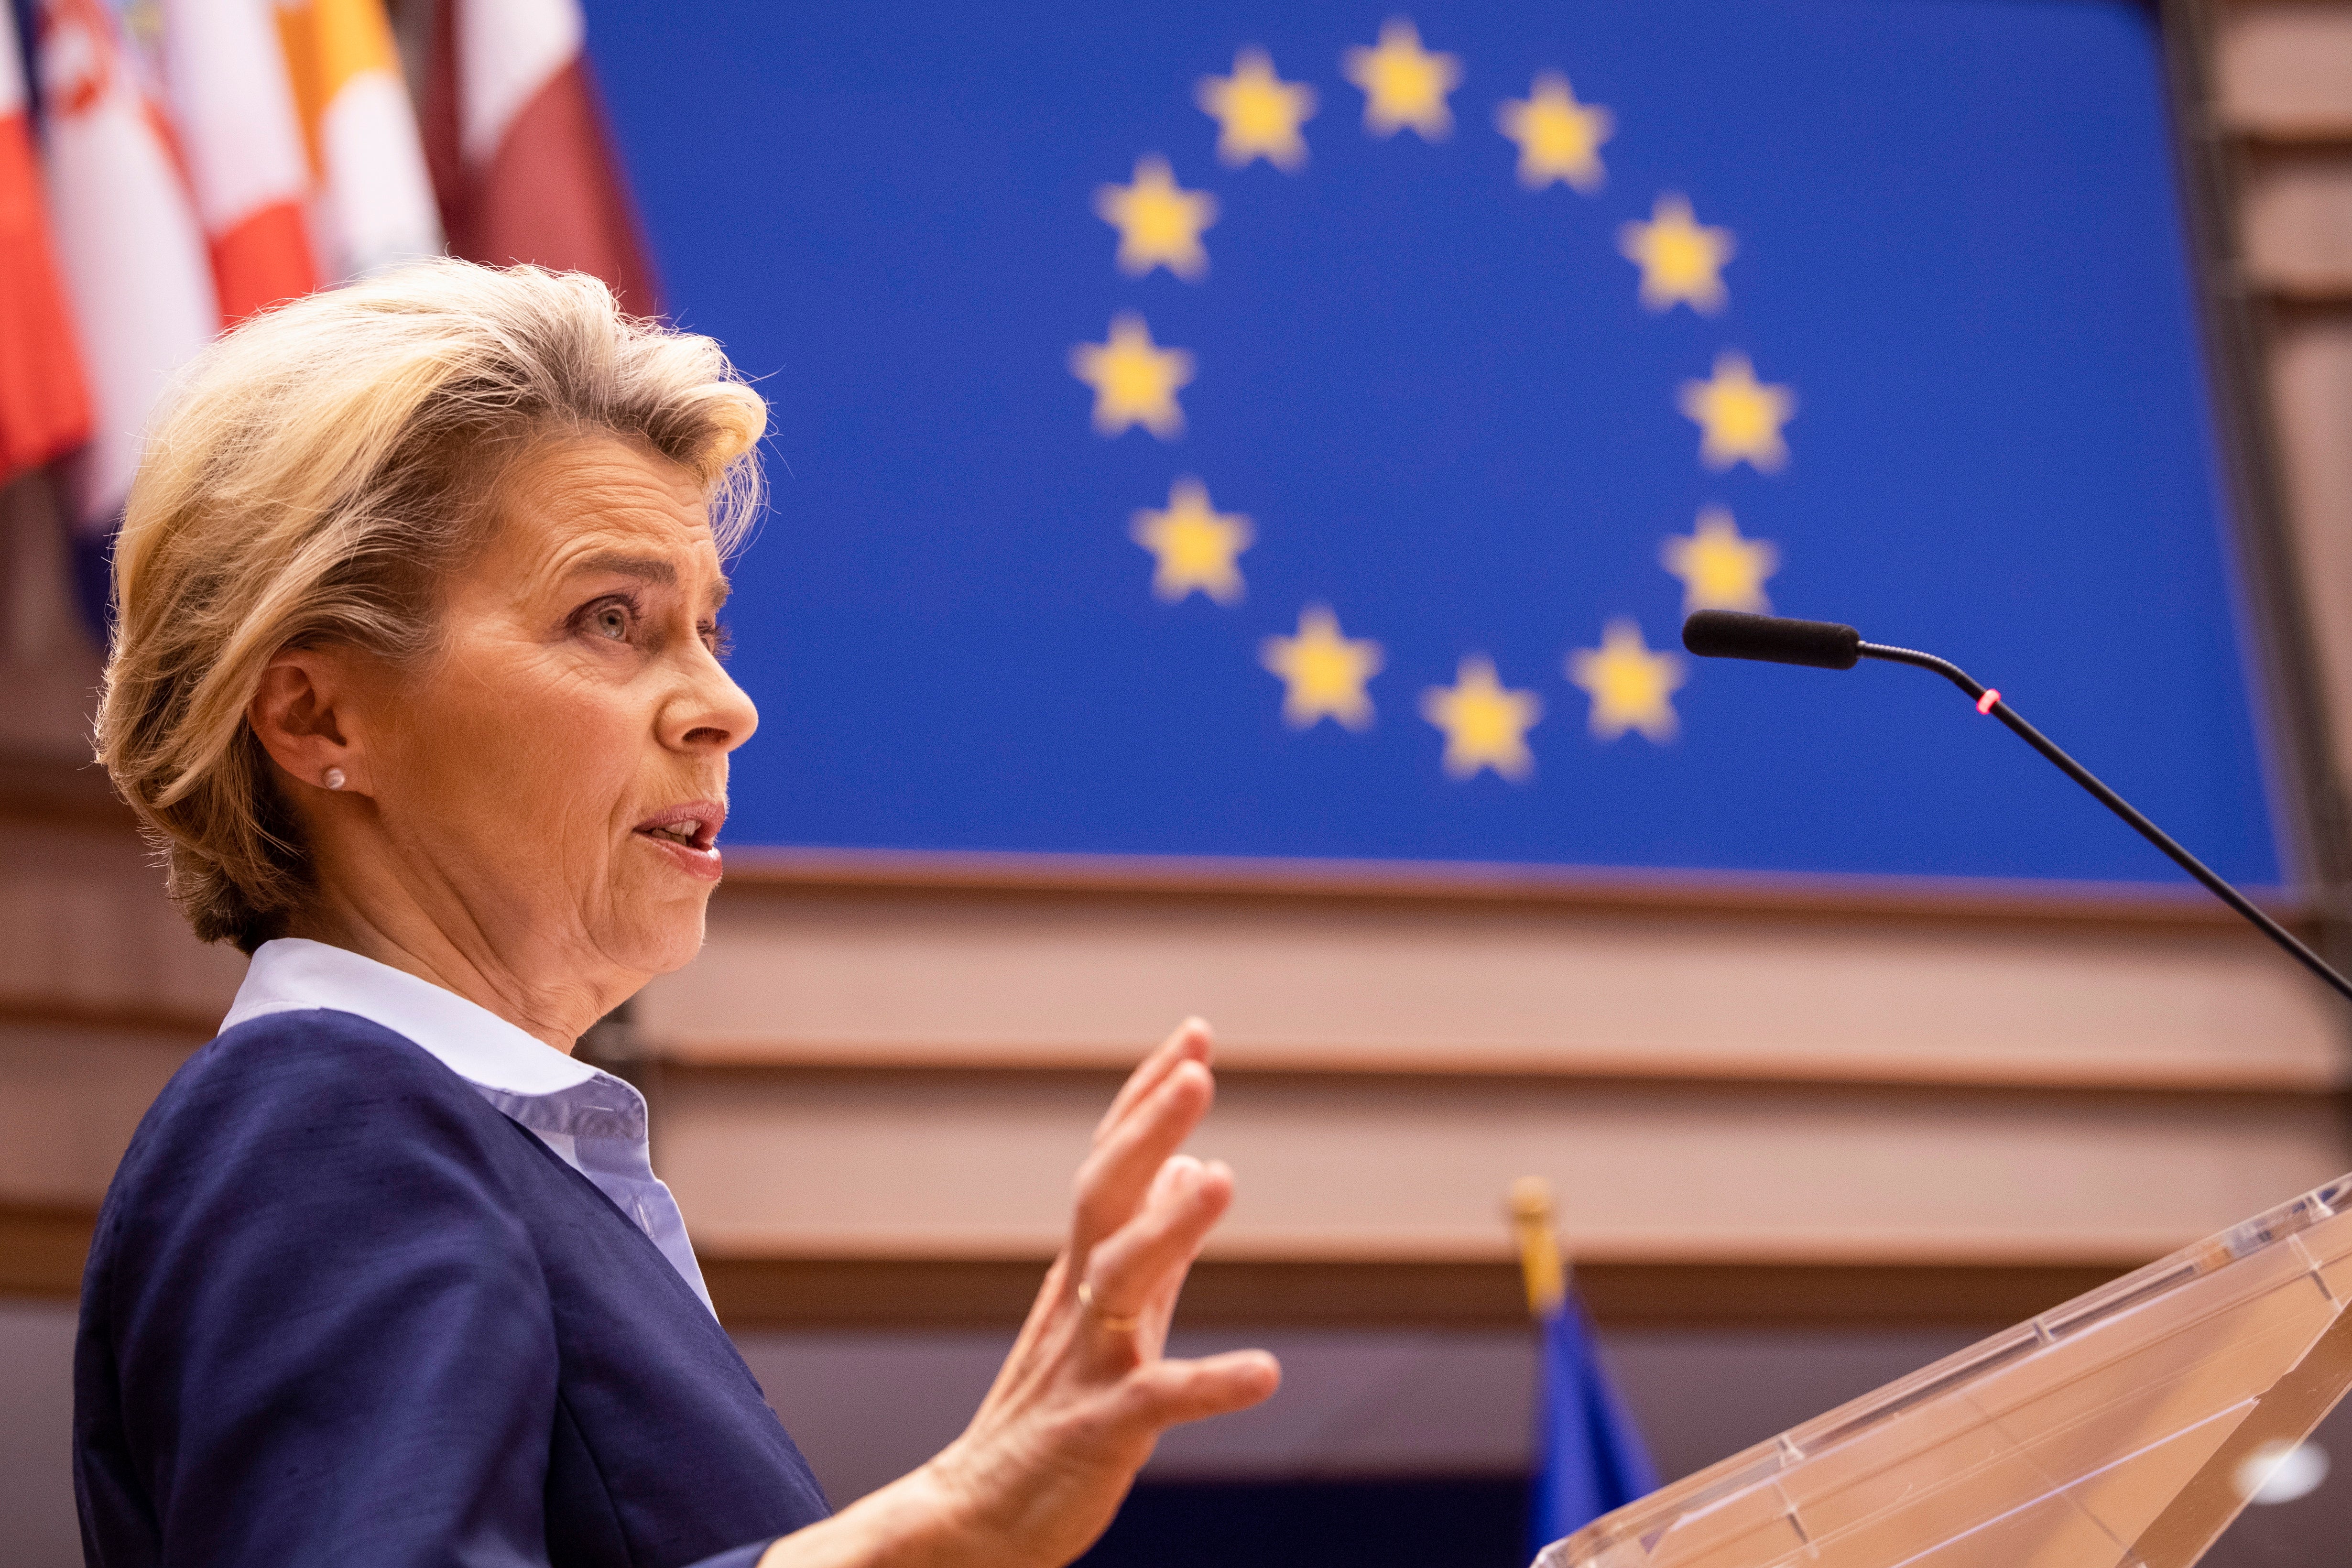 Ursula von der Leyen addresses the European Parliament